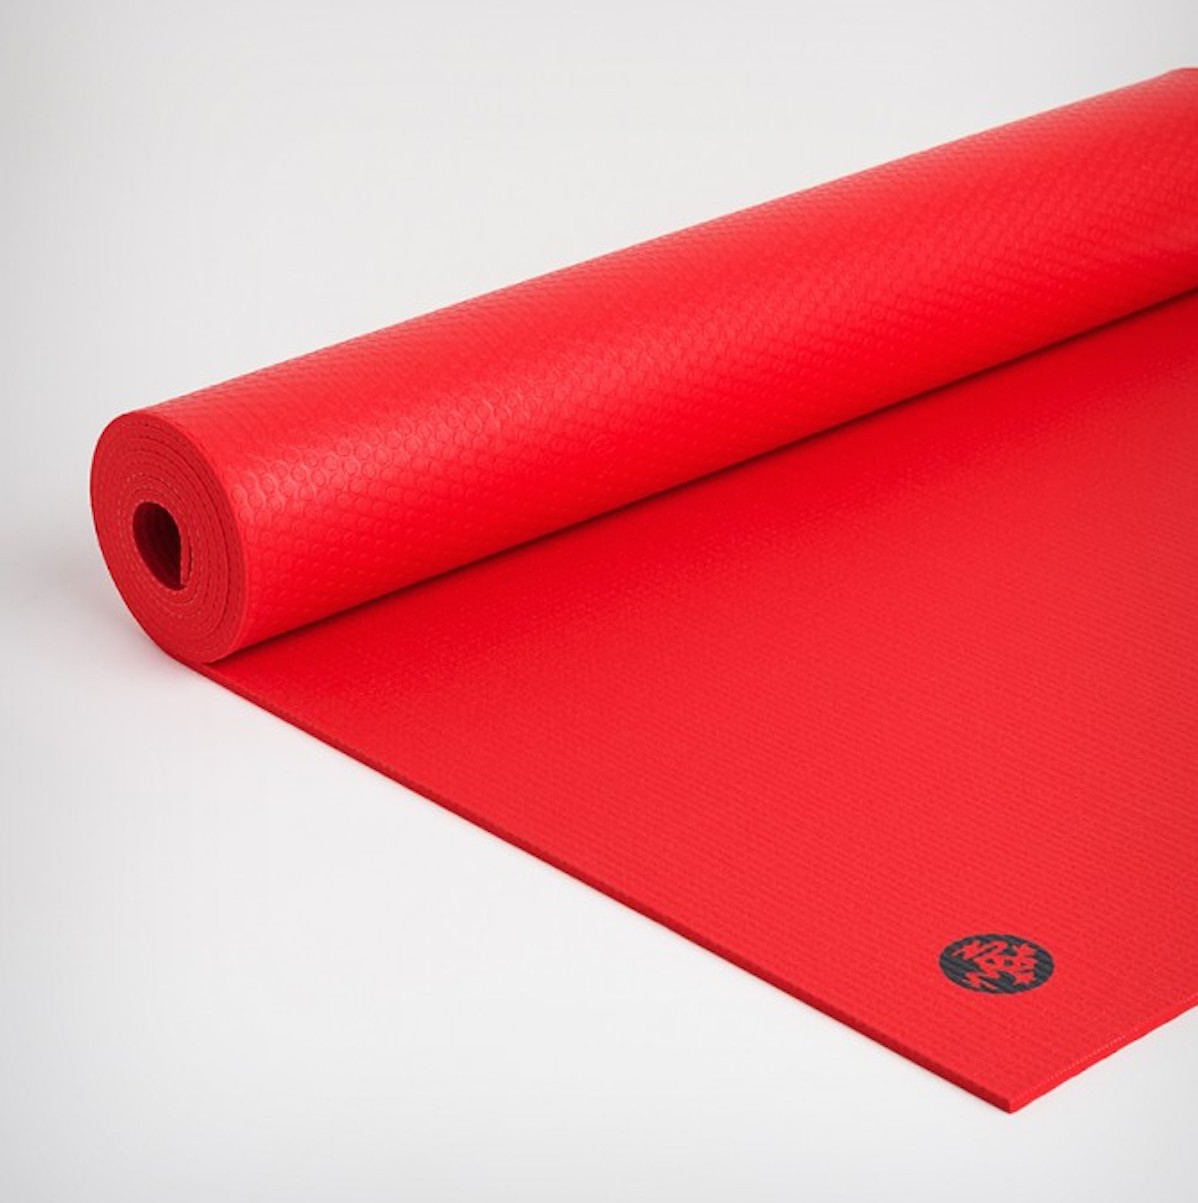 Prolite Yoga Mat